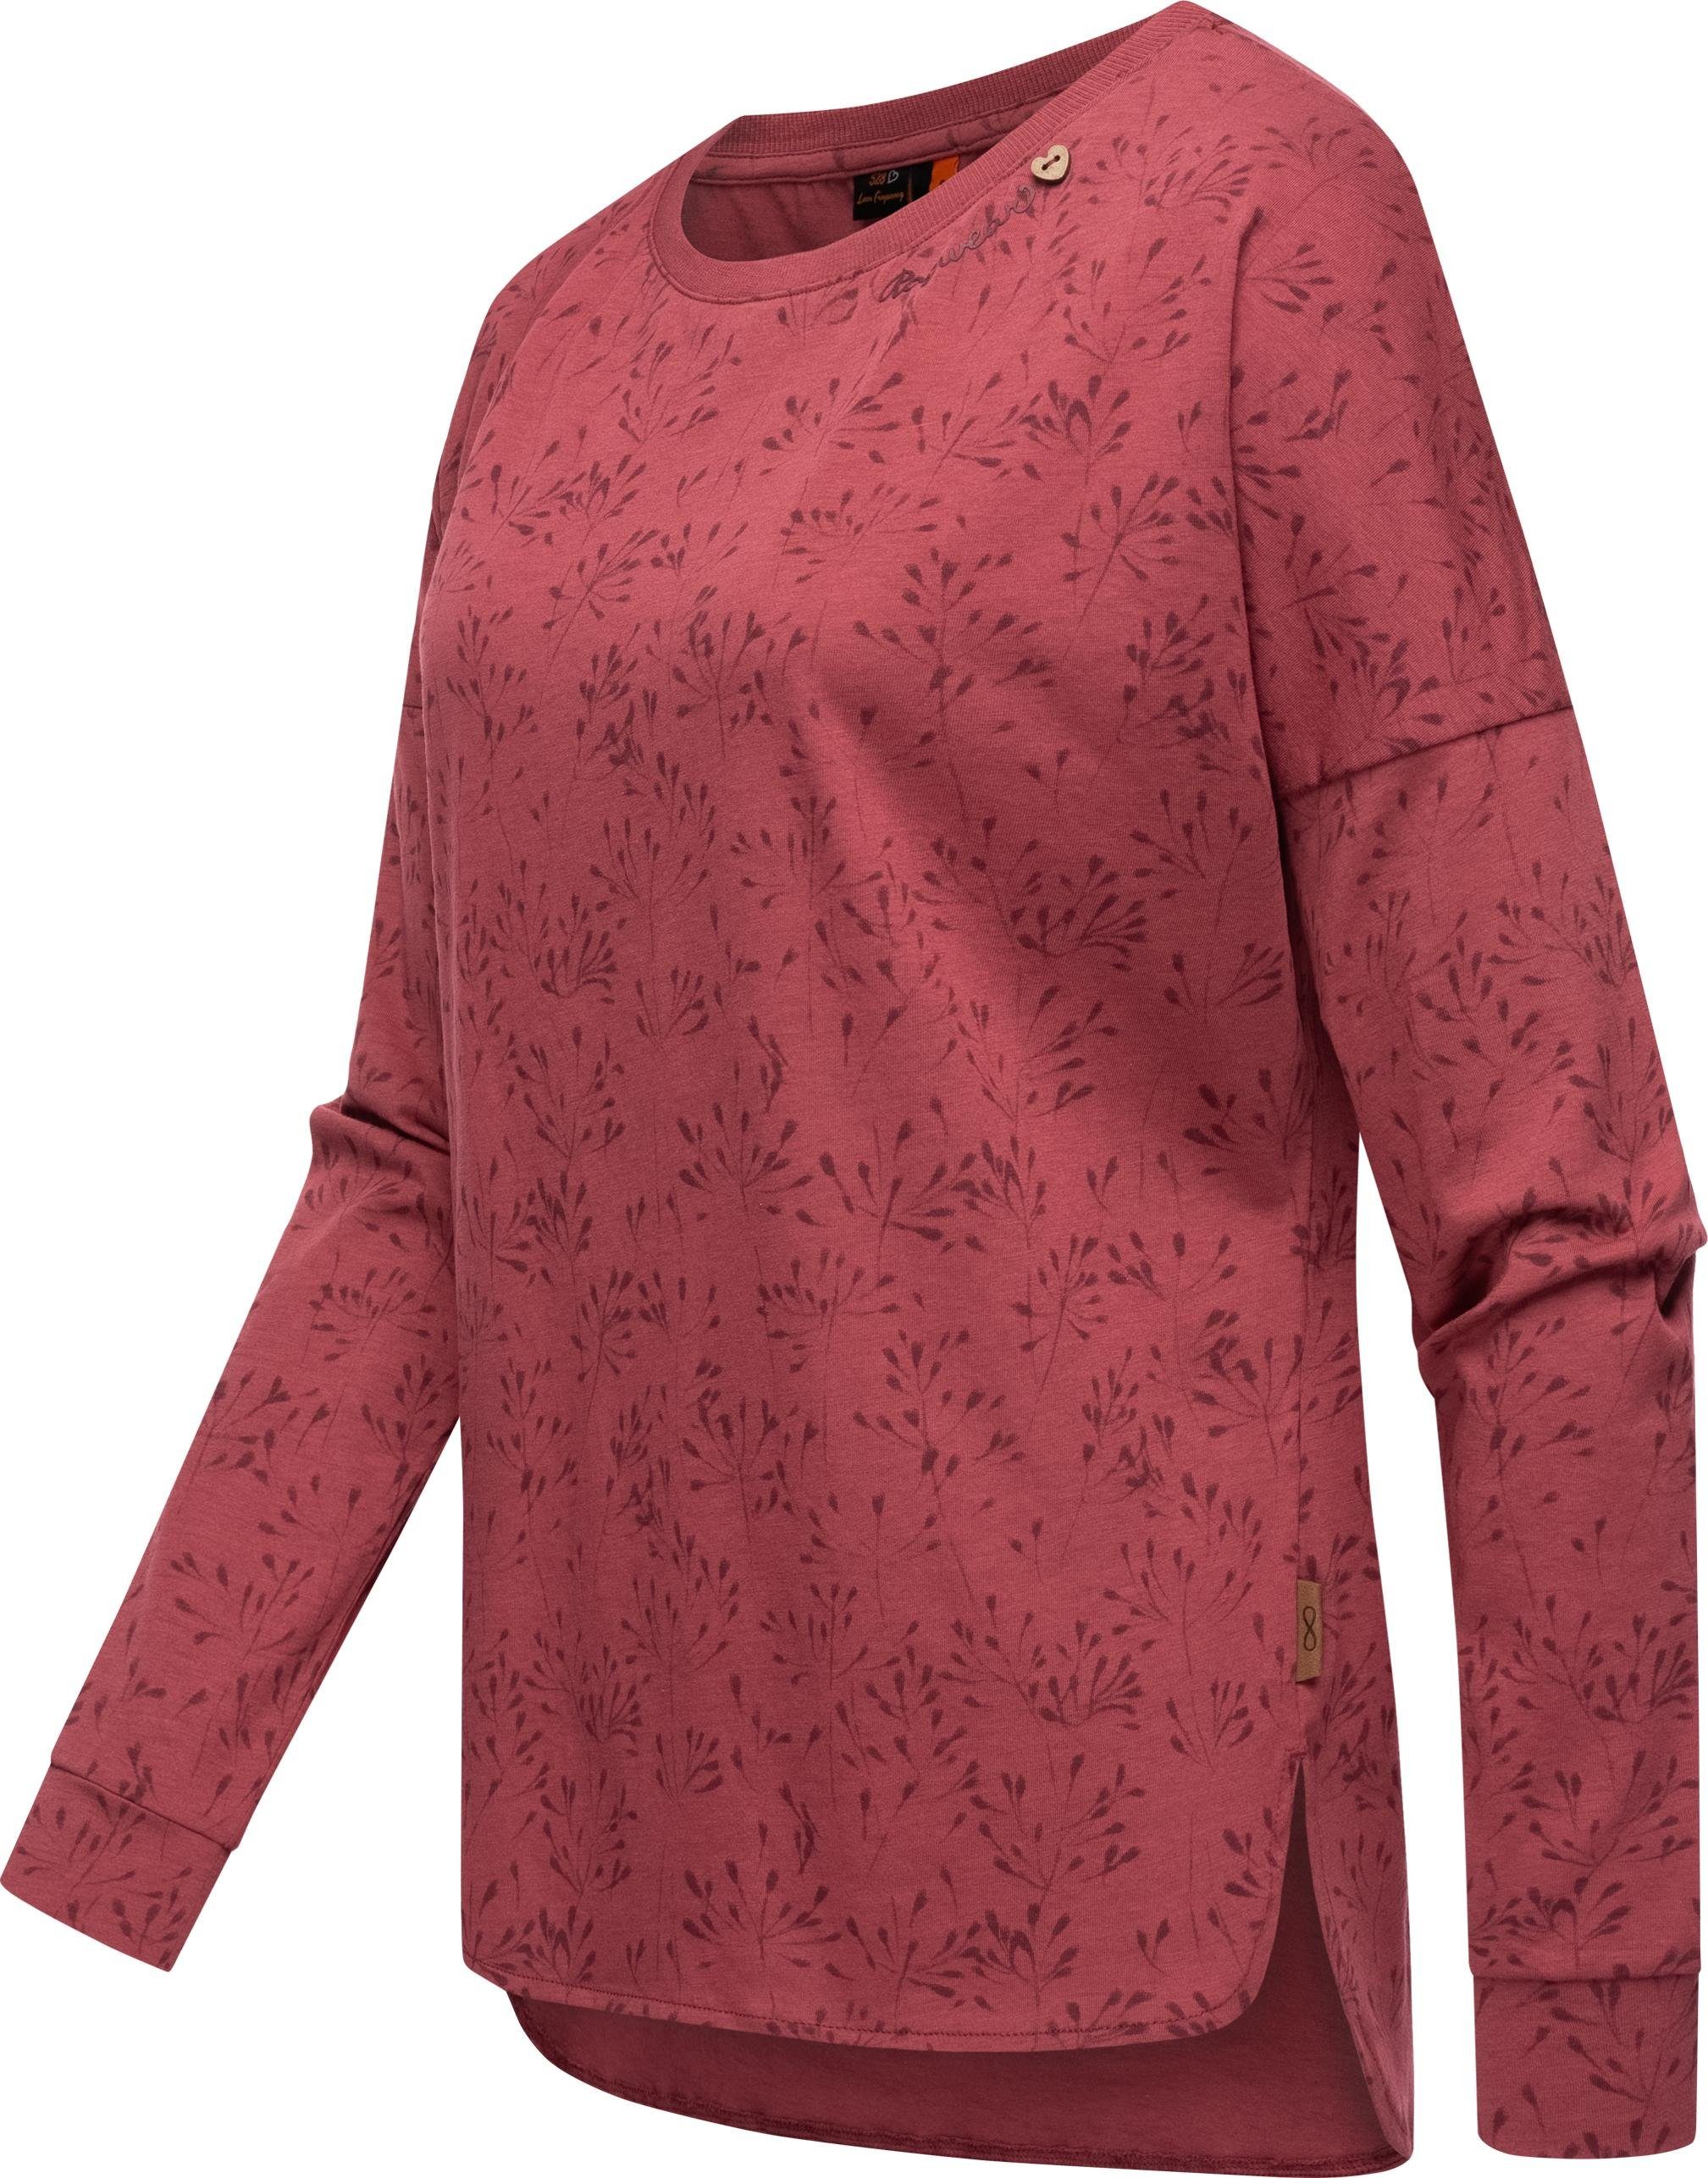 Ragwear Langarmshirt Print Flowery mit Damen Shimona himbeere Long floralem nachhaltigeres Sweatshirt